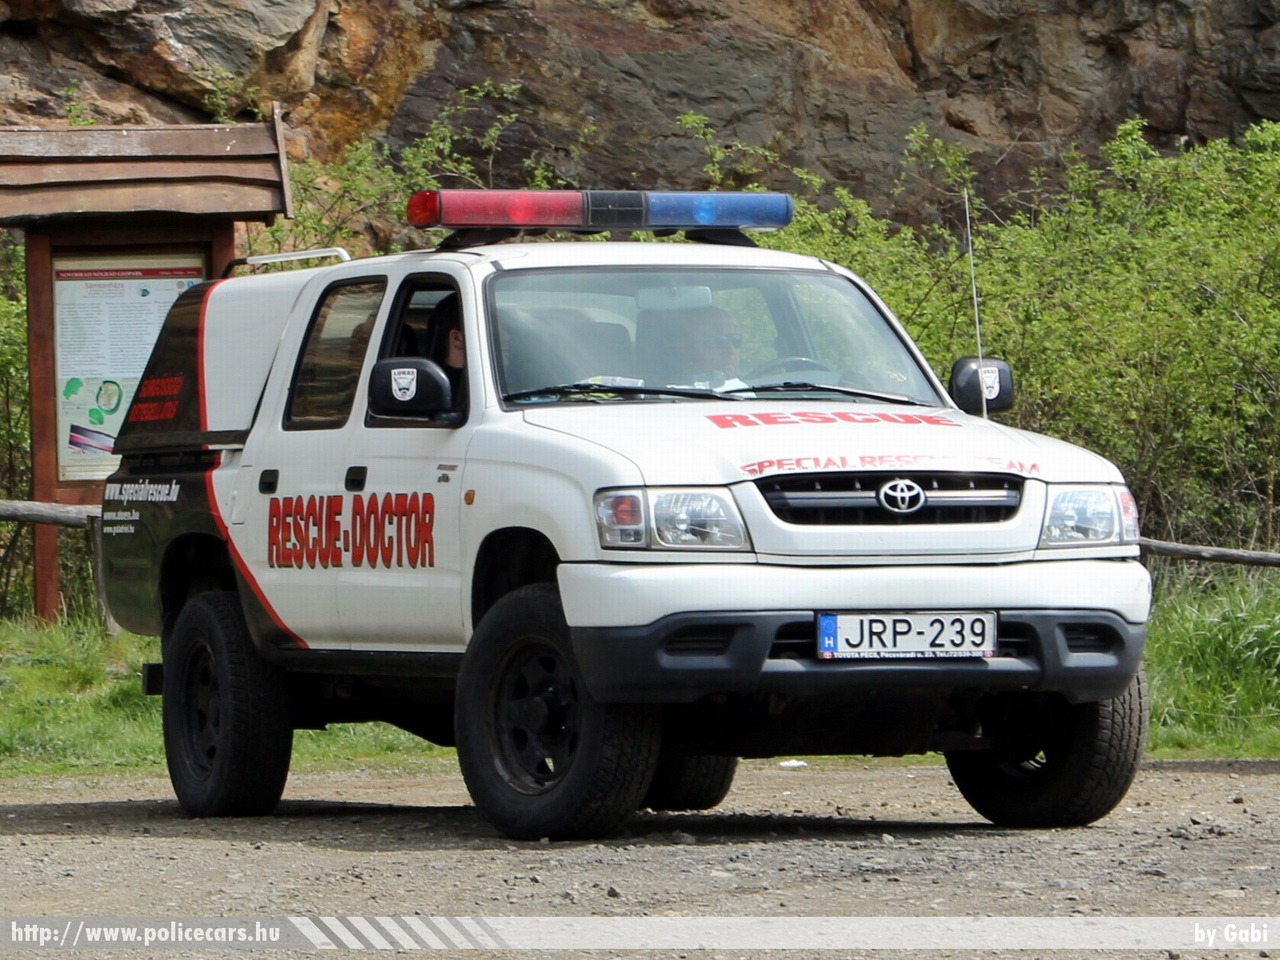 Toyota Hilux, Special Rescue Team, fotó: Gabi
Keywords: JRP-239 speciális mentők tûzoltóautó tûzoltó tûzoltóság magyar Magyarország fire firetruck Hungary hungarian